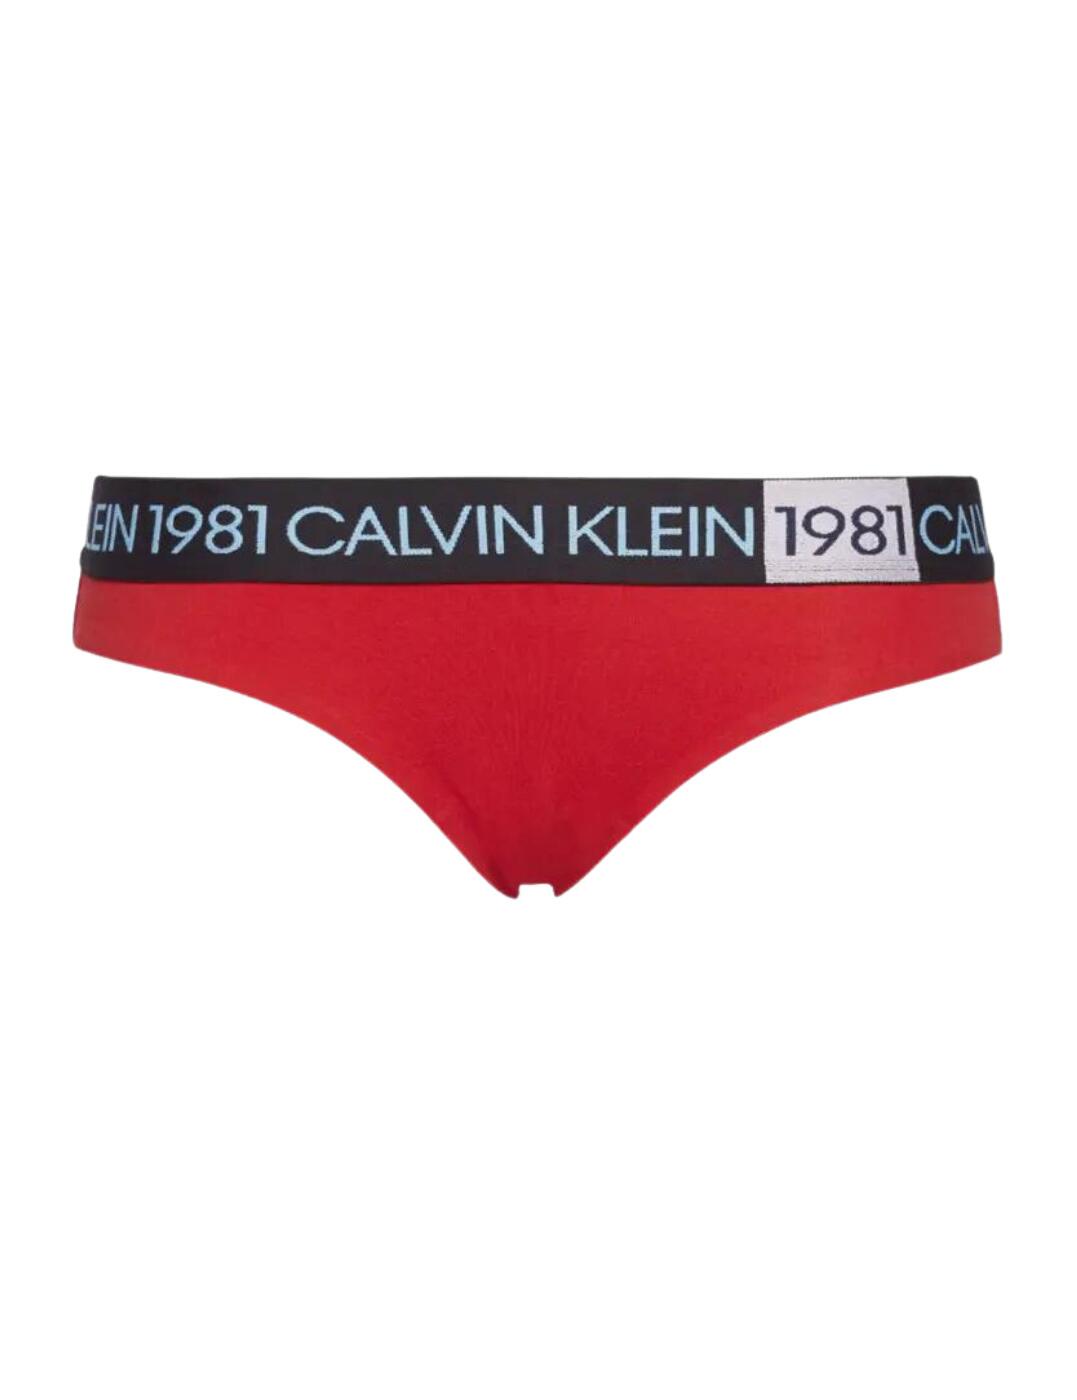  Calvin Klein 1981 Brief Temper